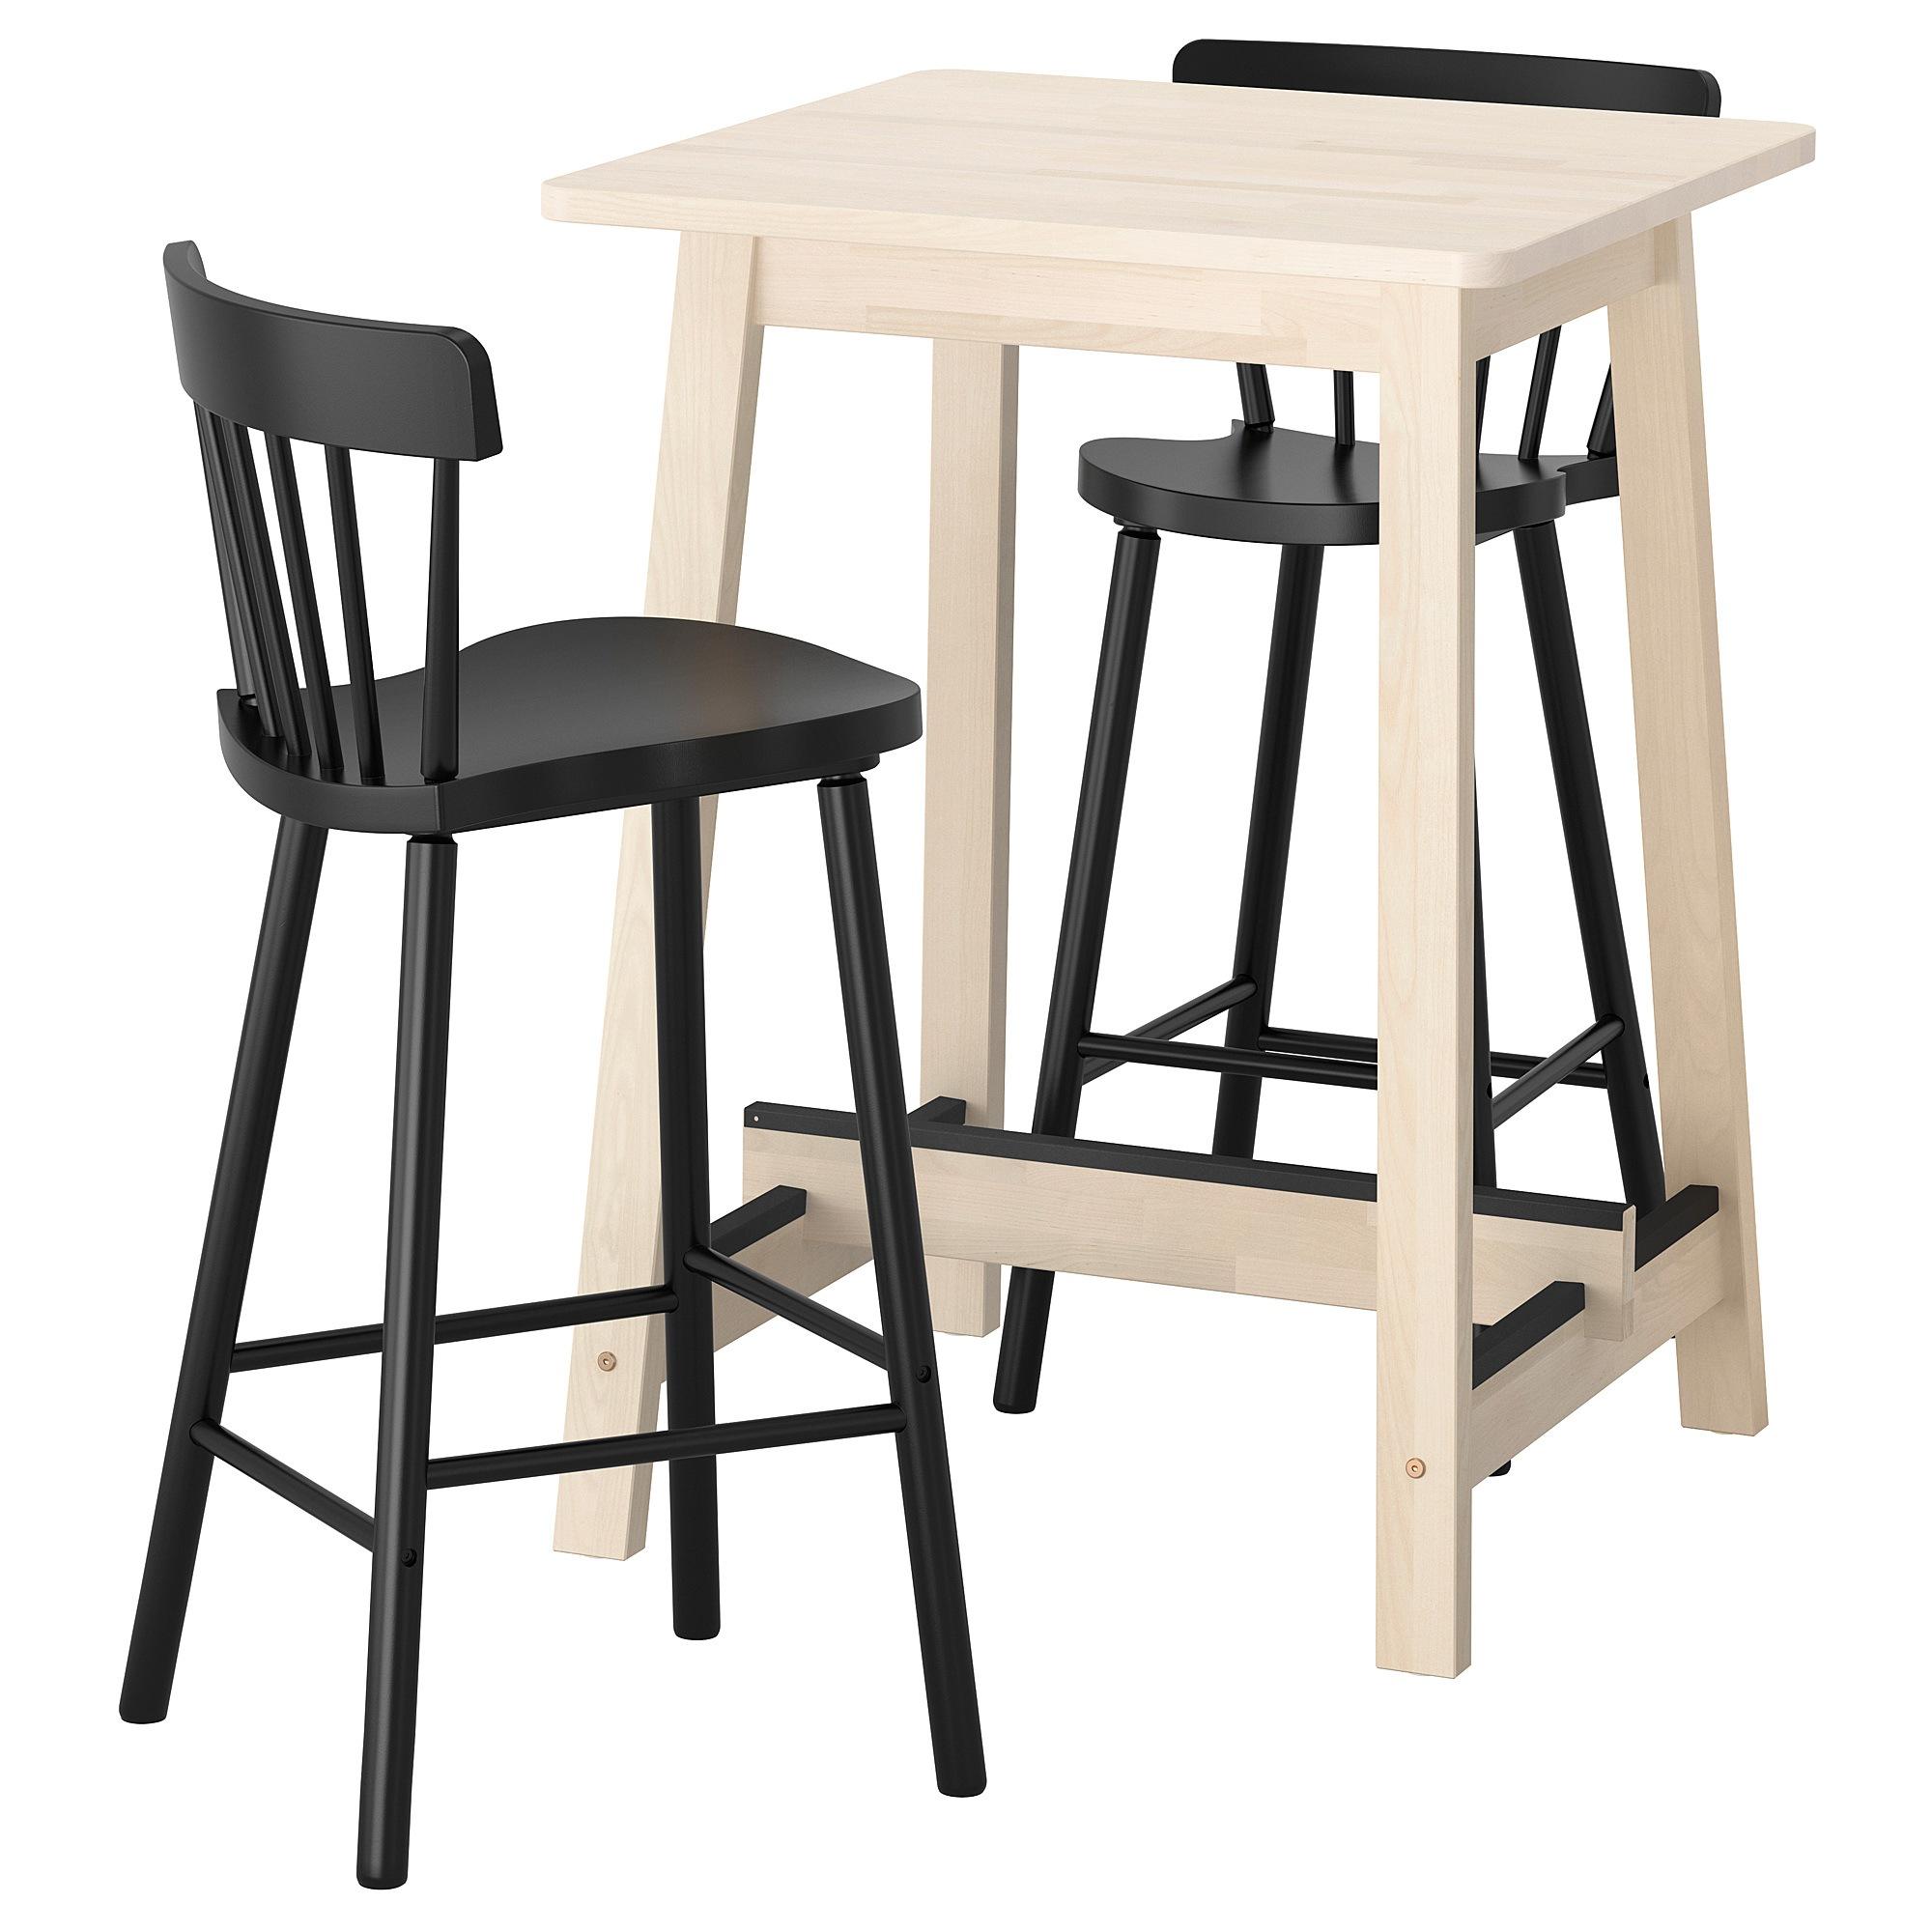 โต๊ะบาร์และบาร์เก้าอี้วางเท้า เก้าอี้วางขา เก้าอี้ตูล สตูล 2 ตัว โต๊ะคาเฟ่ NORRÅKER / NORRÅKER